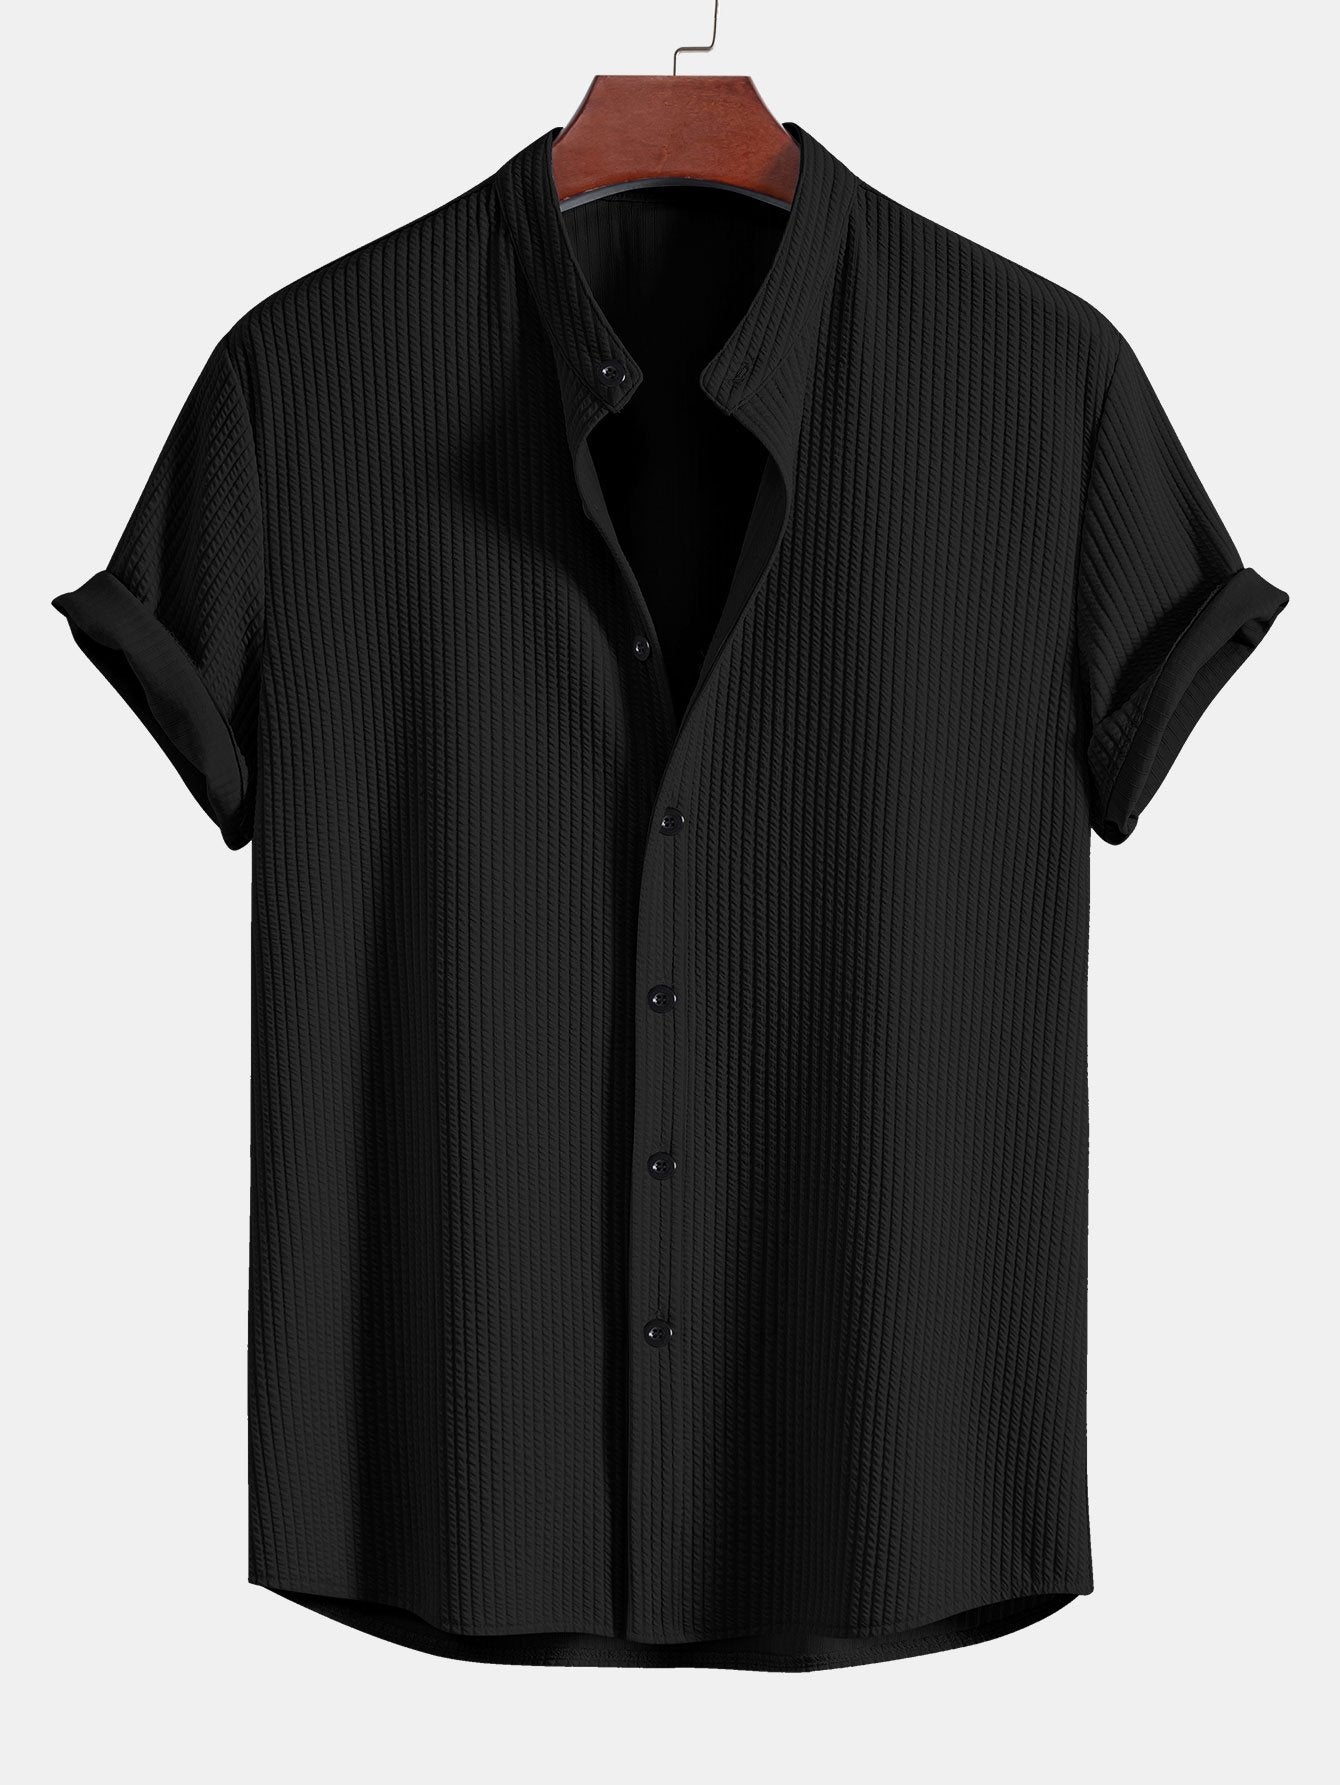 Aurelian™ - Stand-up Collar Shirt